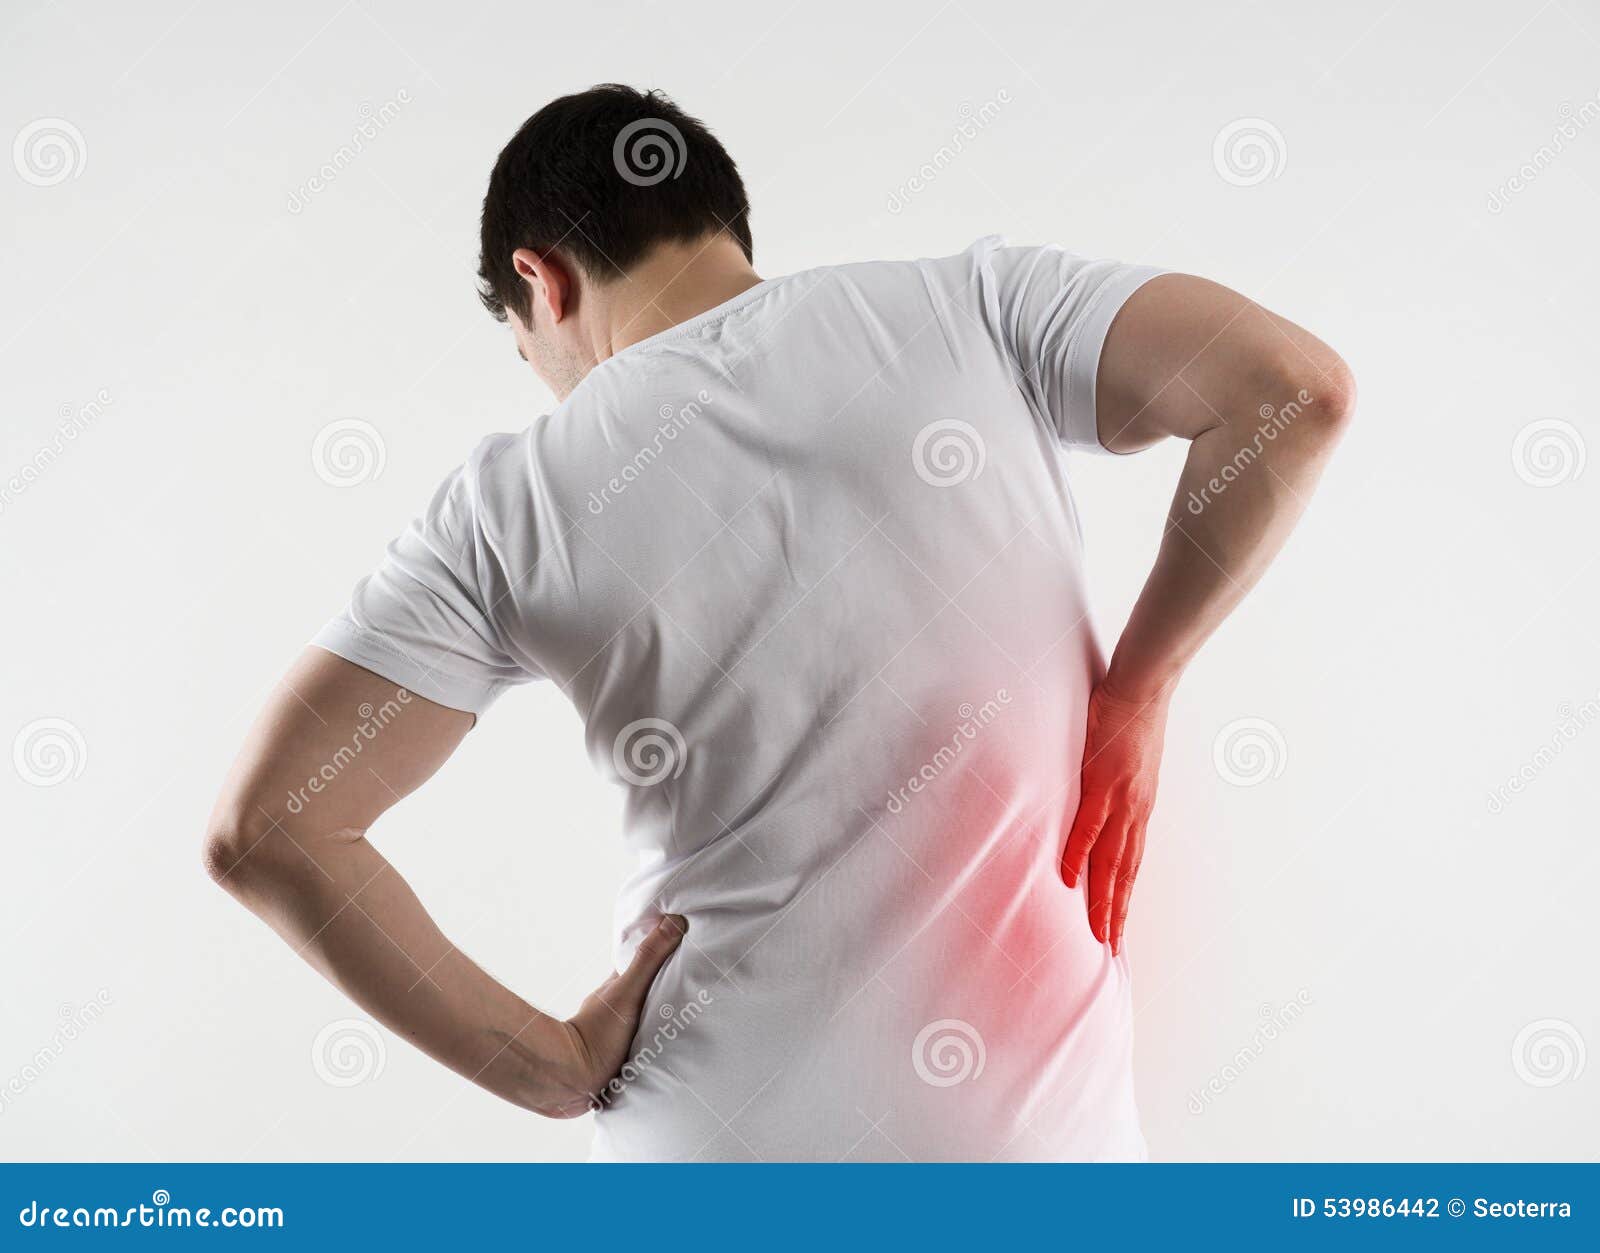 背部疼痛病人图片大全-背部疼痛病人高清图片下载-觅知网